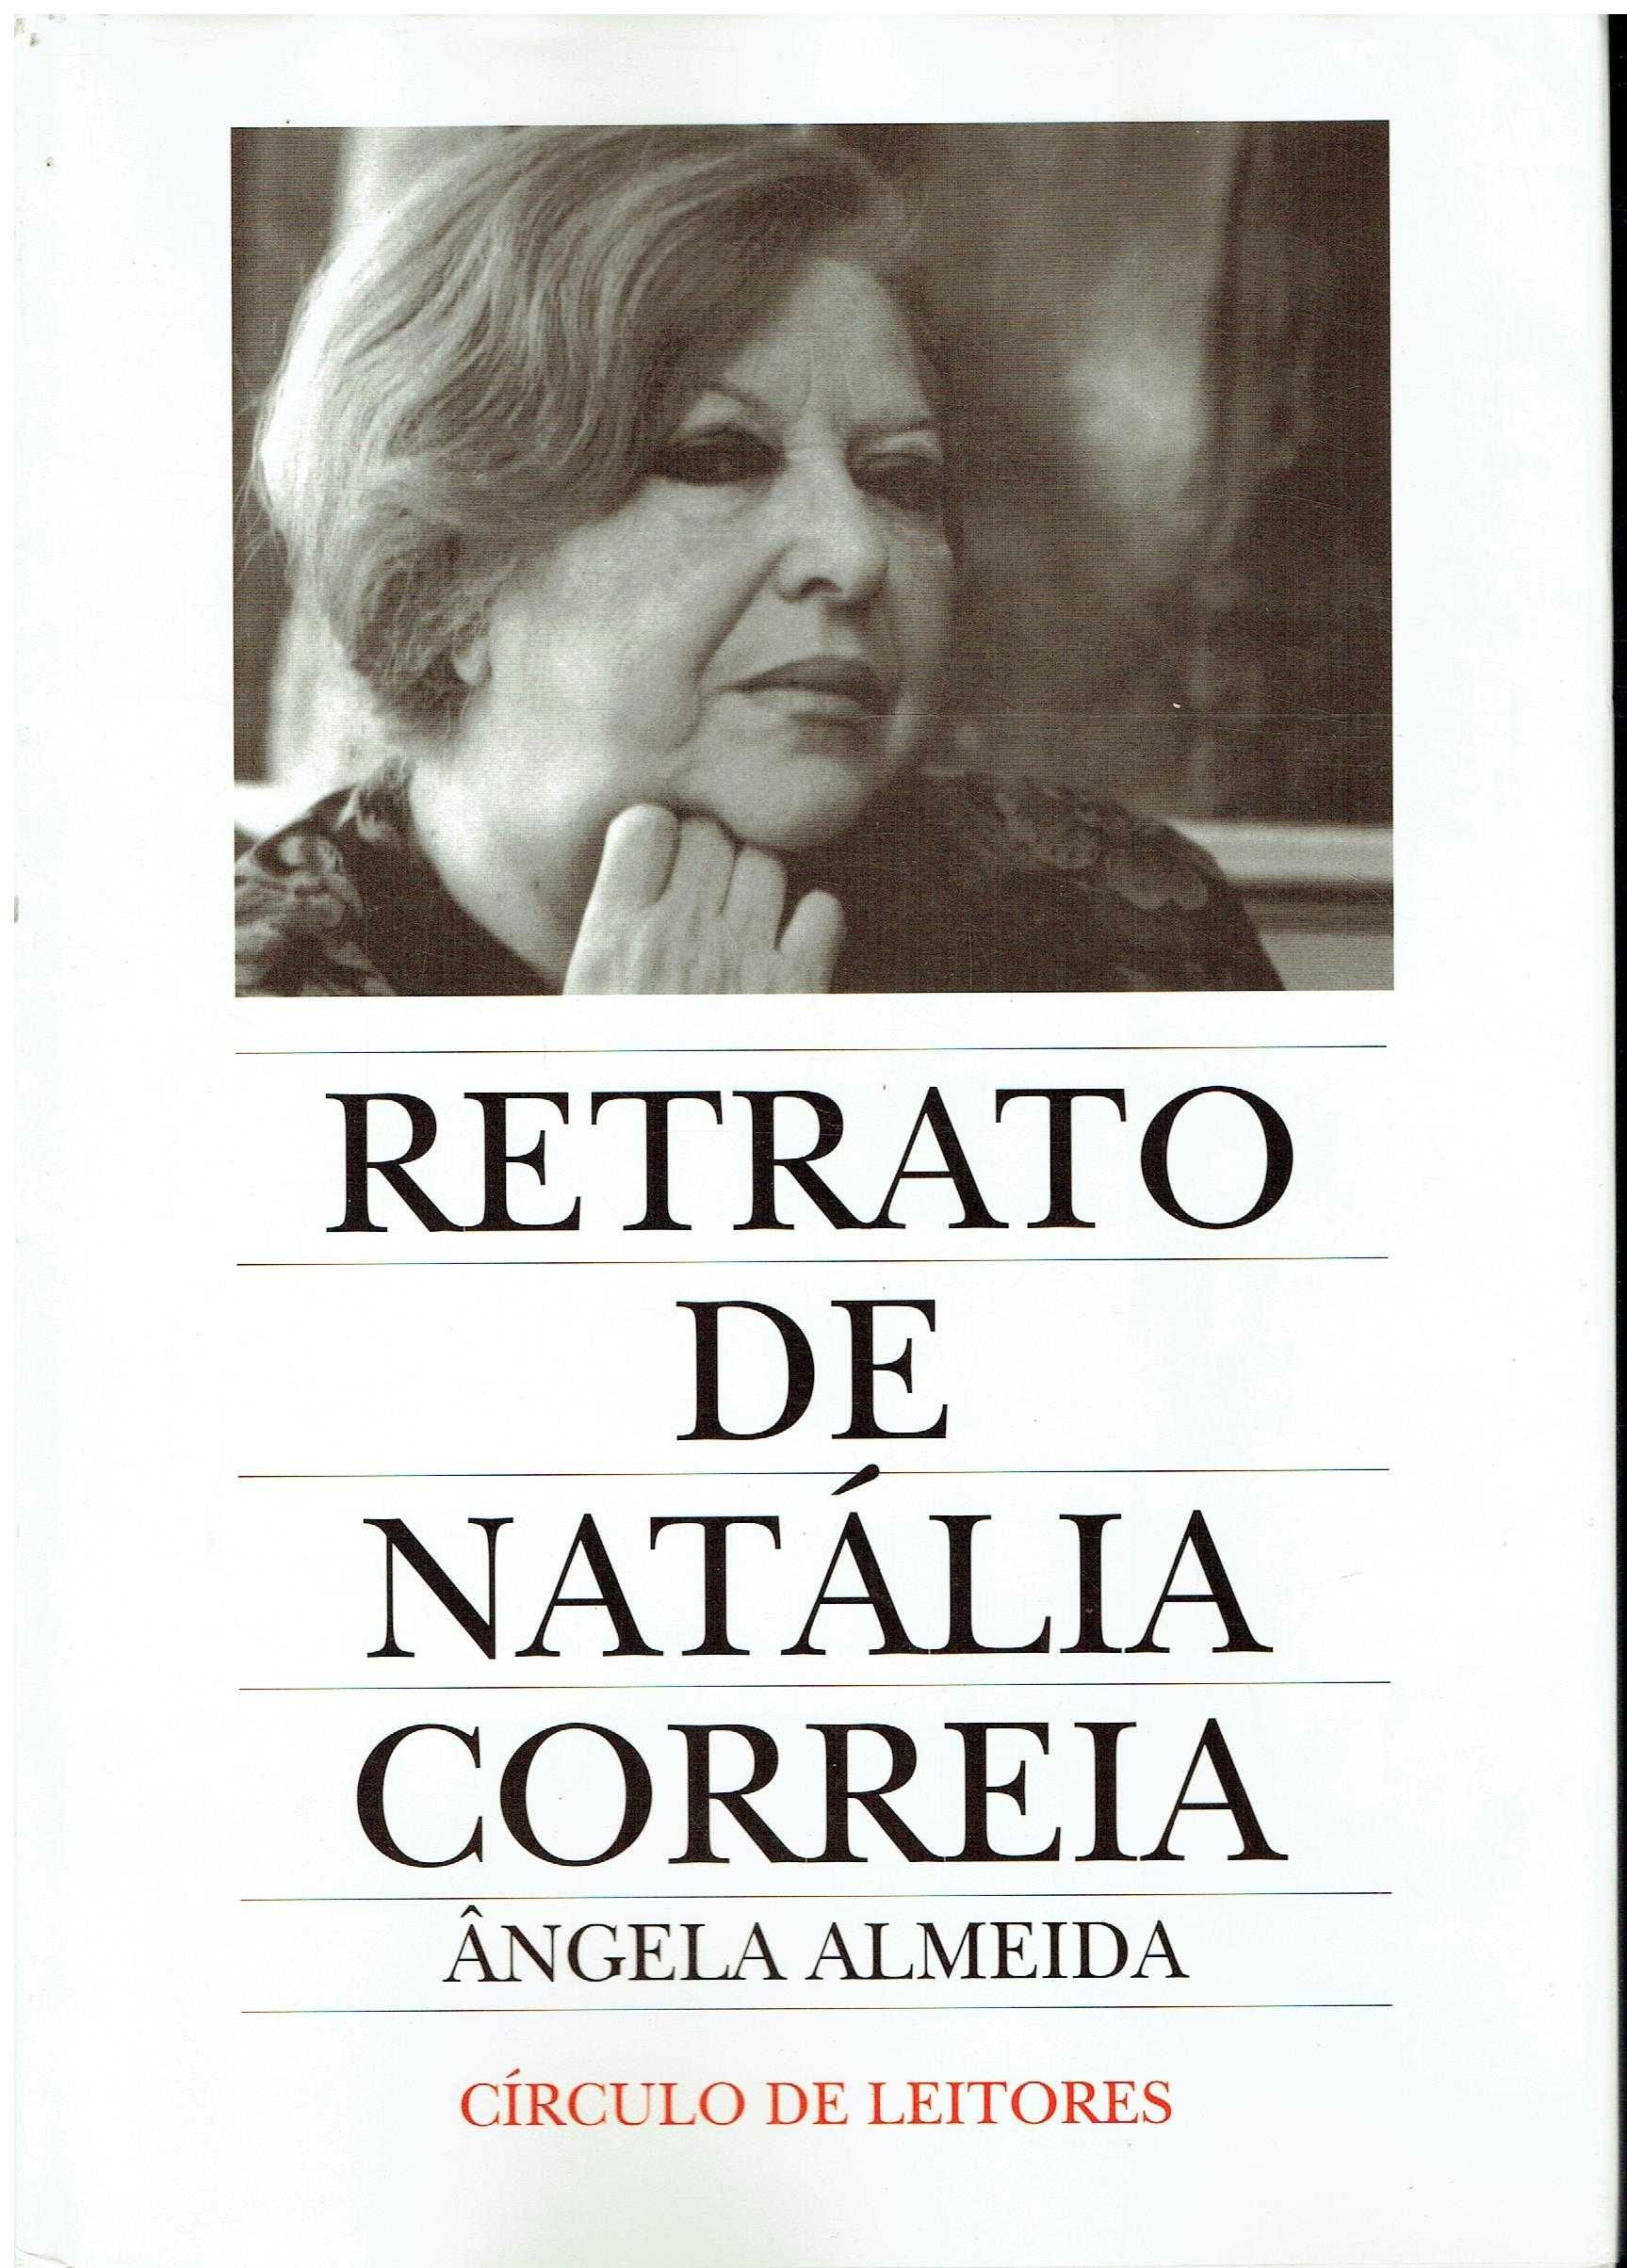 7311

Retrato de Natália Correia 
de Ângela Almeida